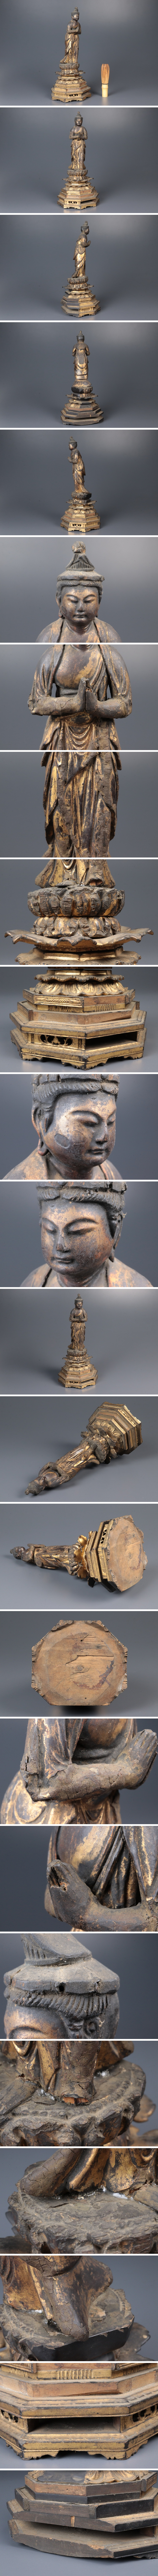 【新作】仏教美術 木彫 仏像 立像 木彫仏 細密彫刻 置物 高さ:約31cm 骨董品 美術品 6430ecfz 仏像